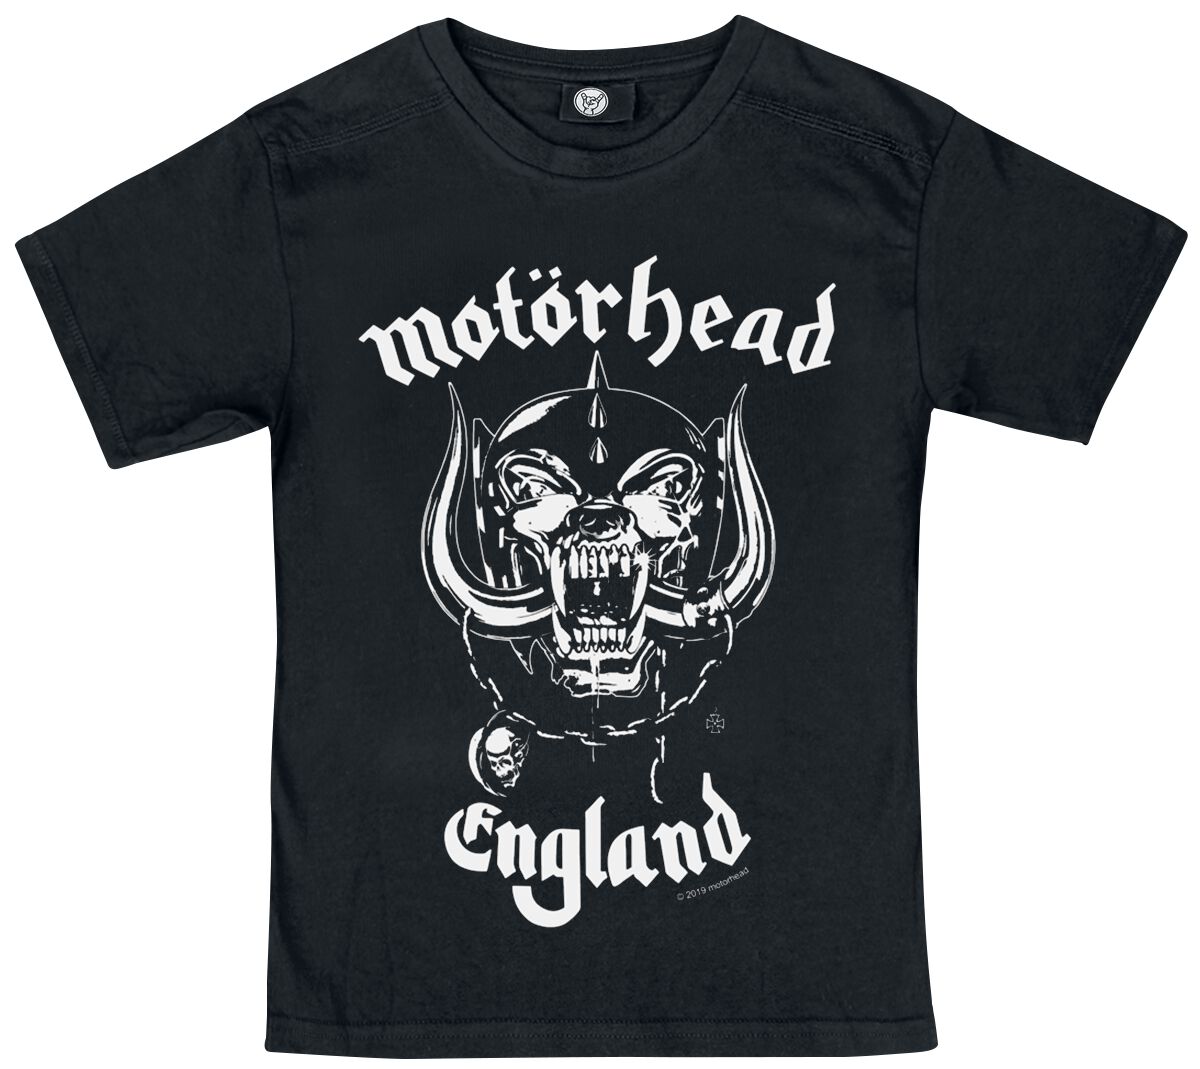 Motörhead T-Shirt für Kleinkinder - Metal-Kids - England - für Mädchen & Jungen - schwarz  - Lizenziertes Merchandise!